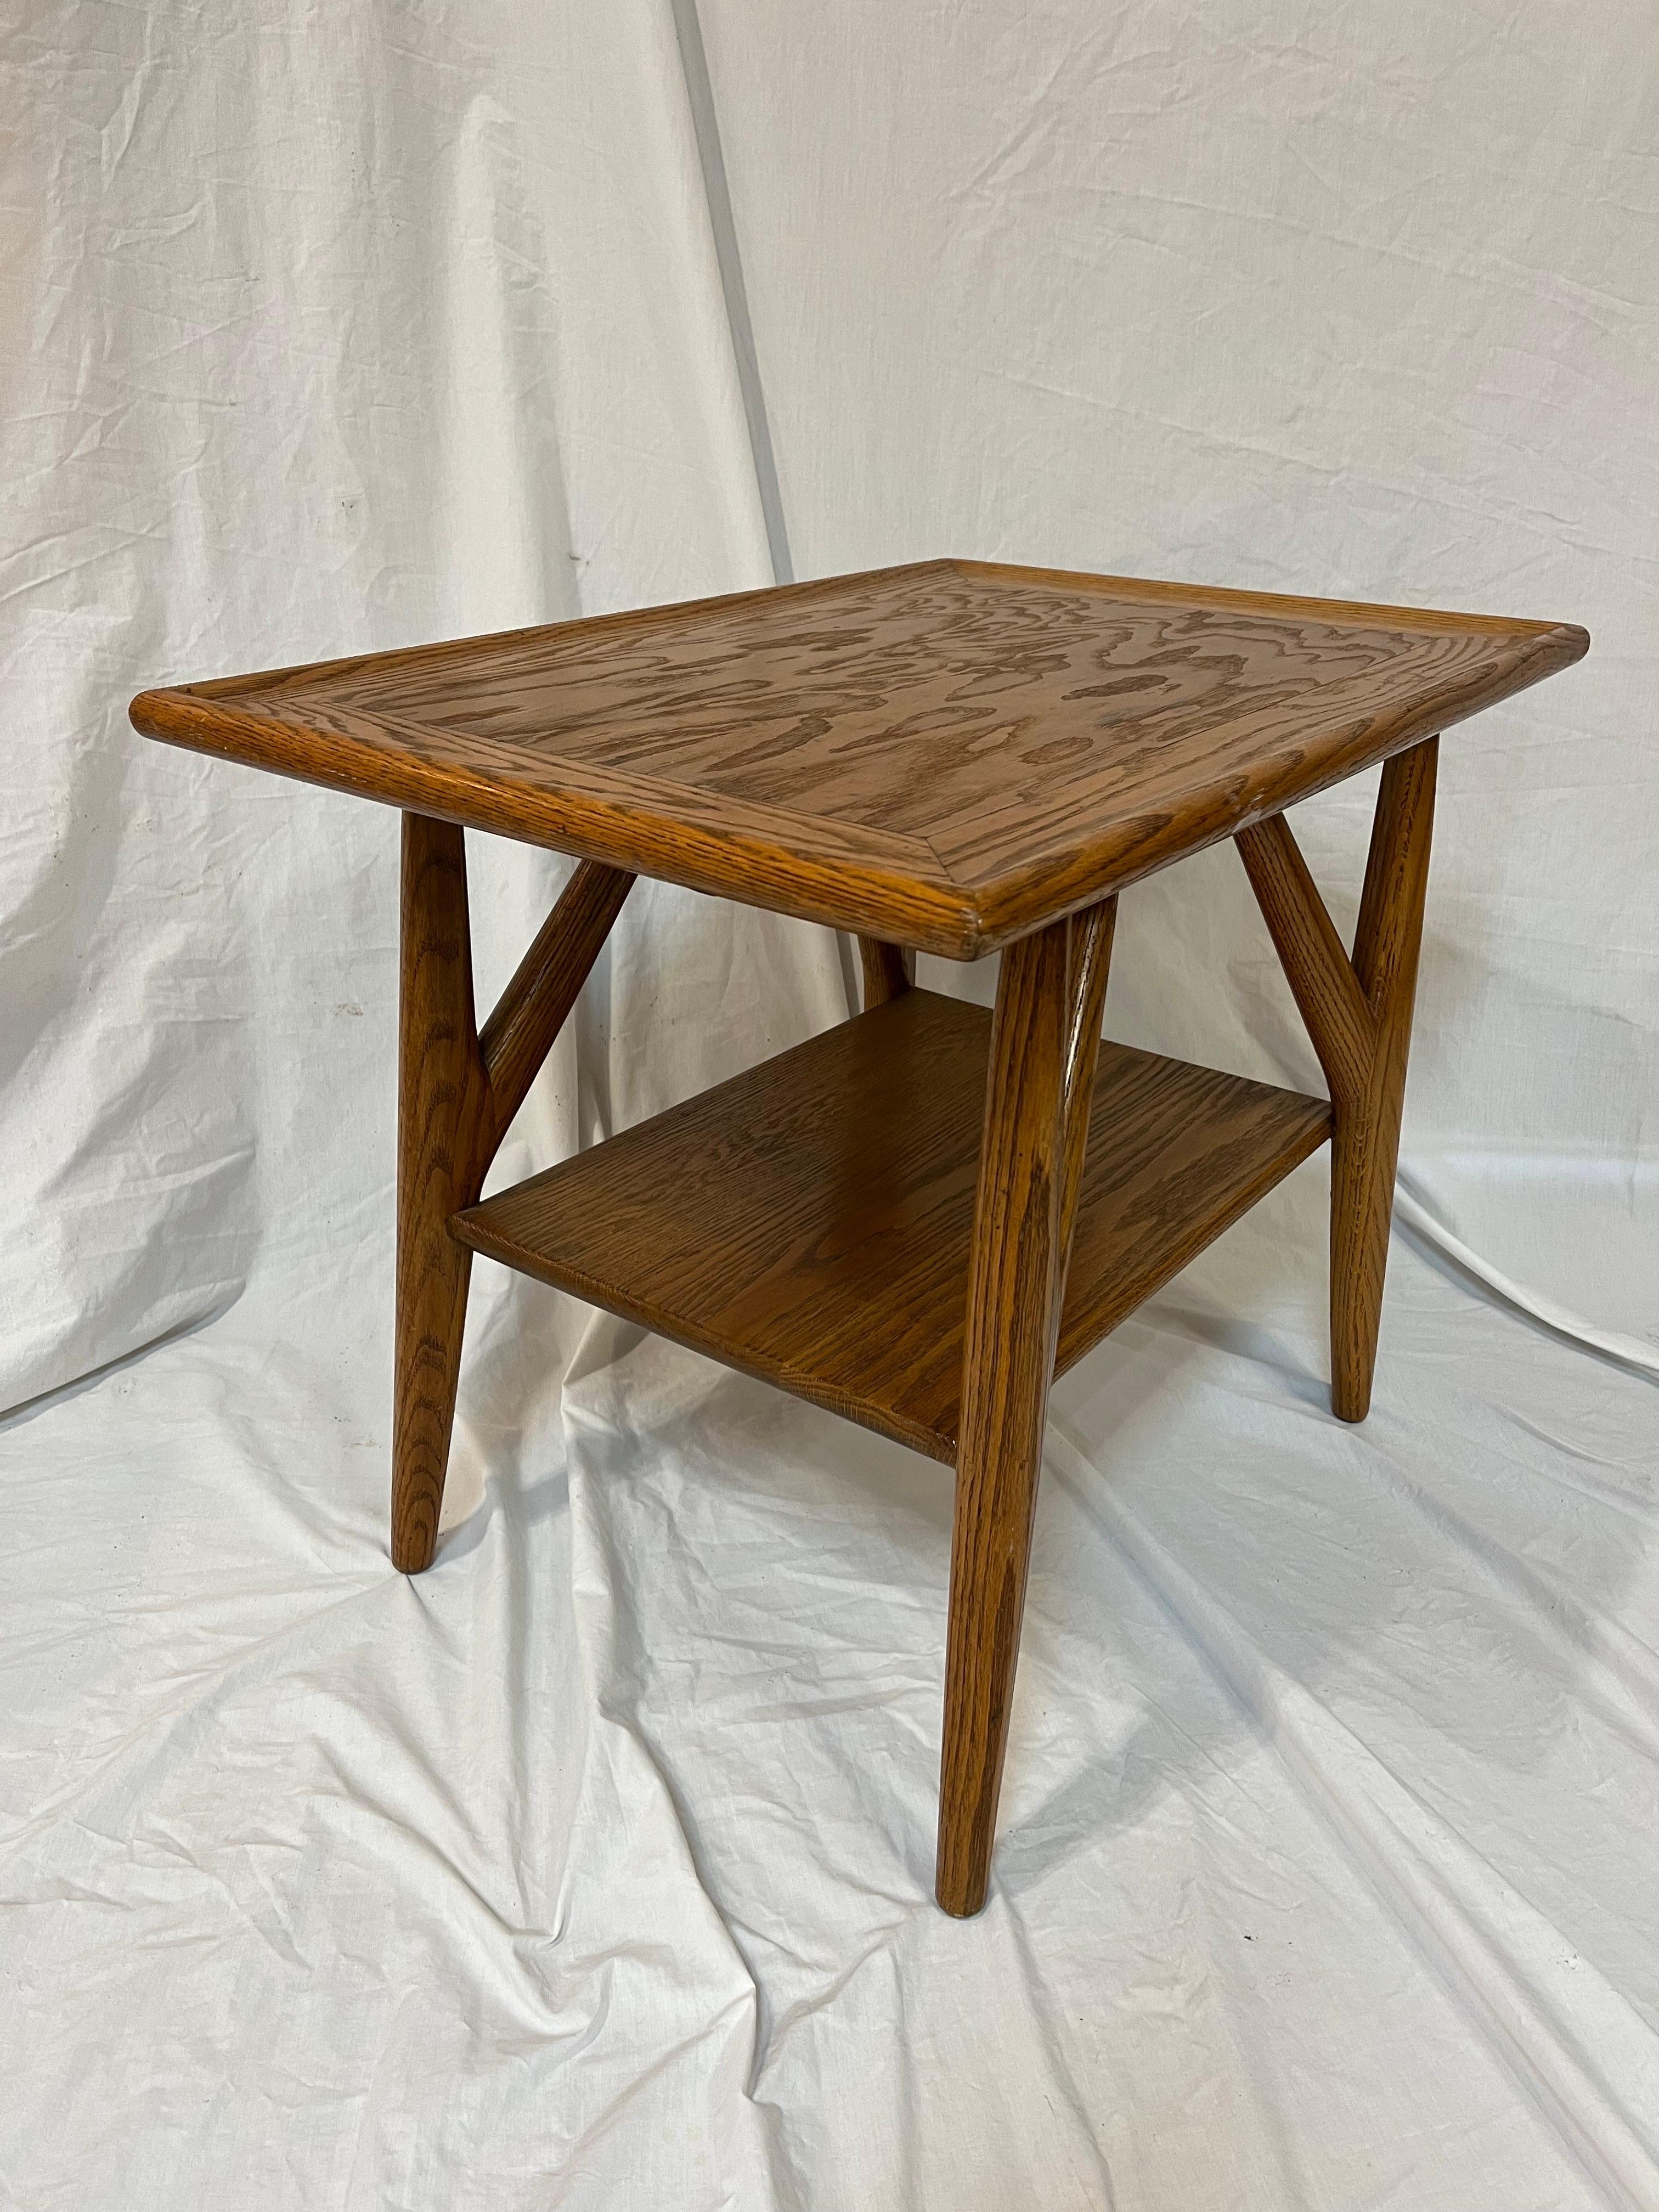 Jack Van Der Molen Mid Century Modern American Design Oak Wood Side or End Table For Sale 5